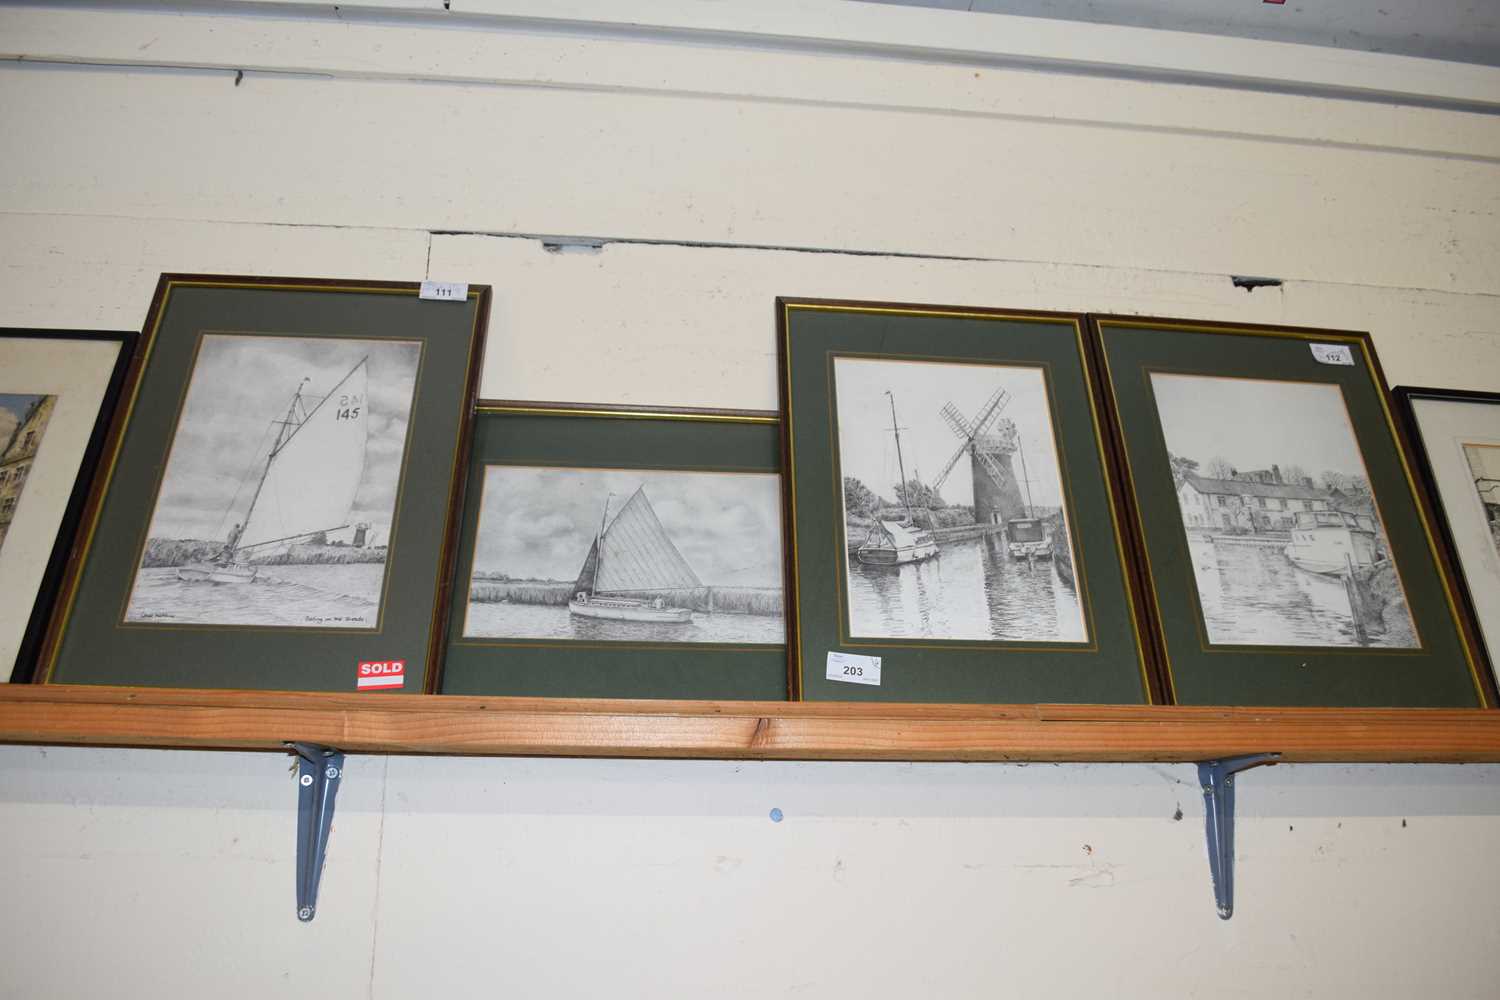 Chris Hutchins, group of four framed studies, Broadland scenes